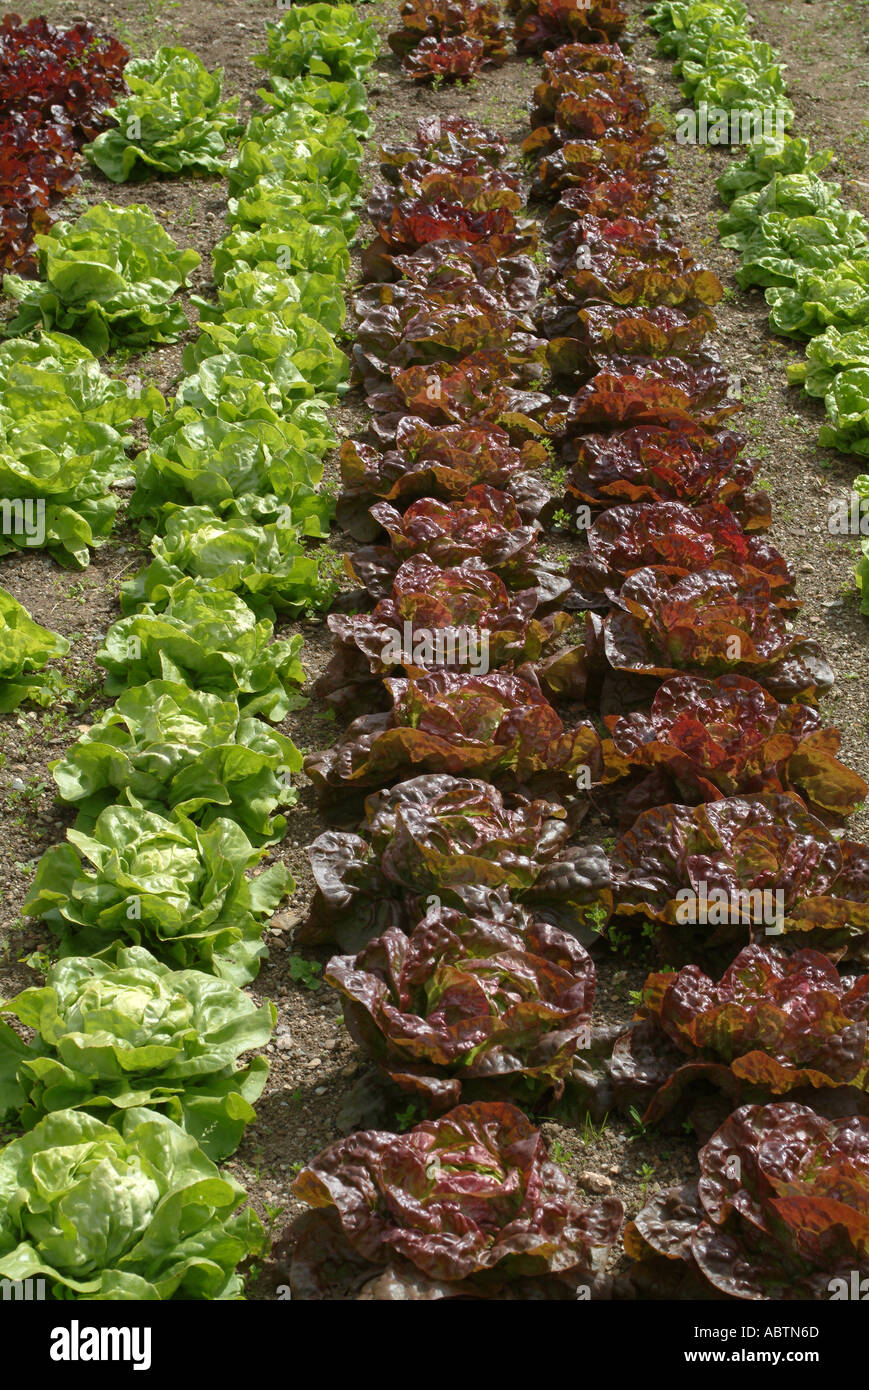 Reglementierten Linie der Salat wächst in den verlorenen Gärten von Heligan St Austell Cornwall England Vereinigtes Königreich UK Stockfoto